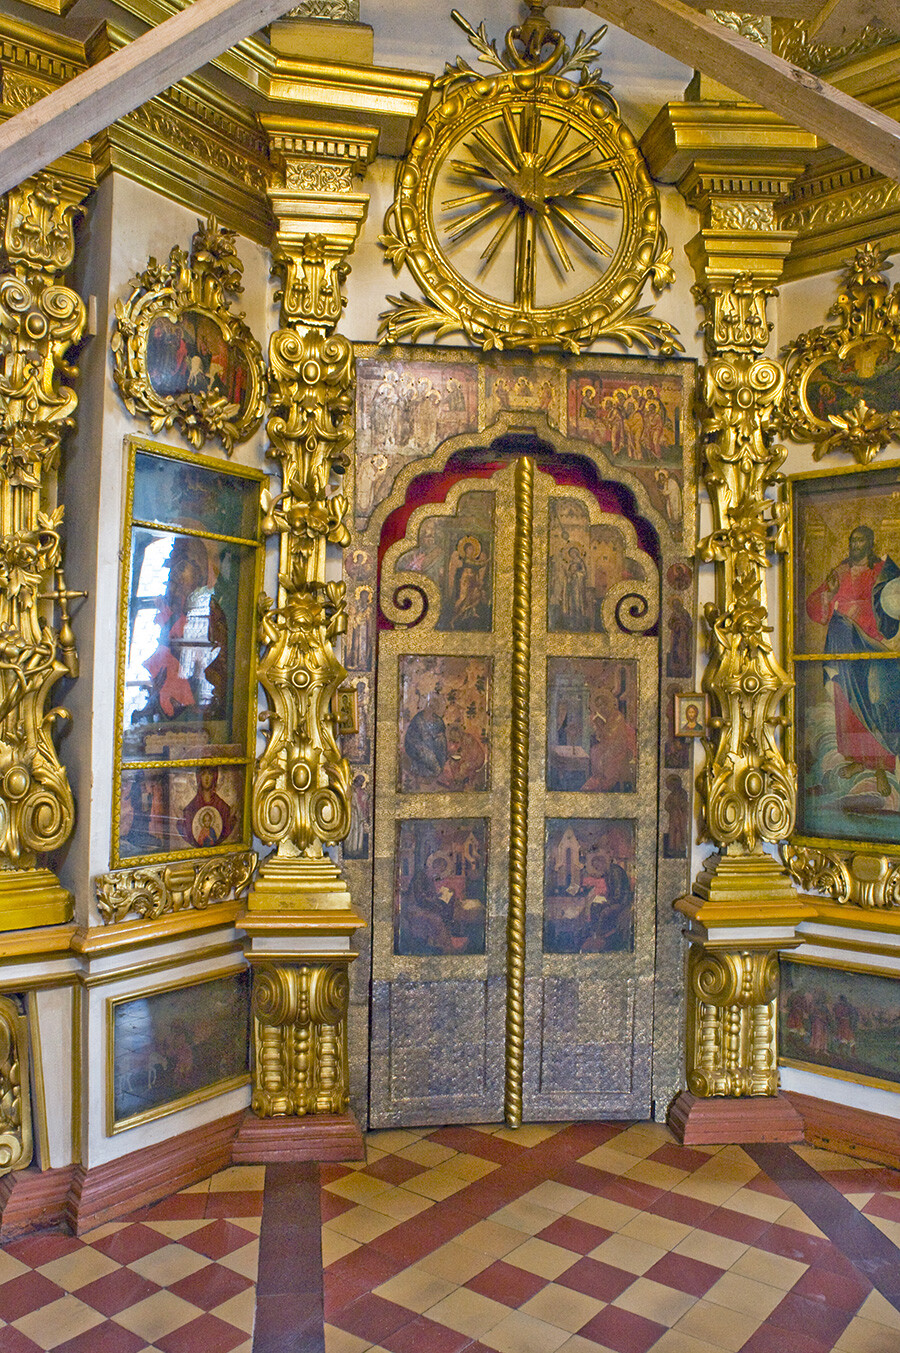 Monasterio de la Anunciación. Catedral de la Anunciación, Puerta Real de la pantalla de iconos (entrada al altar mayor). 16 de agosto de 2012